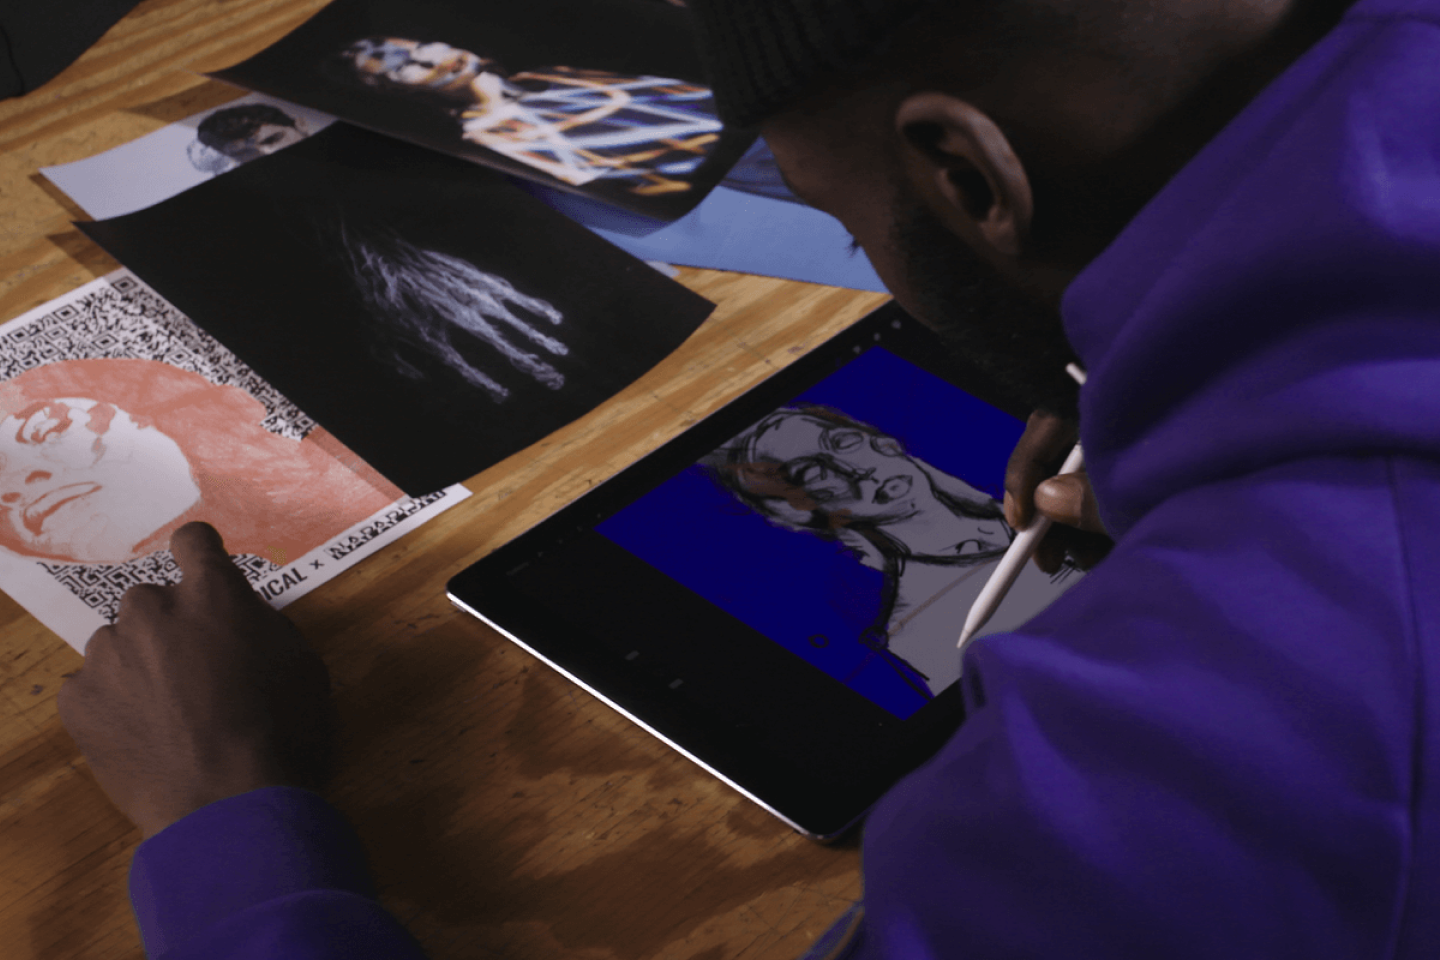 Una persona ilustra en una tablet a partir de fotos de referencia